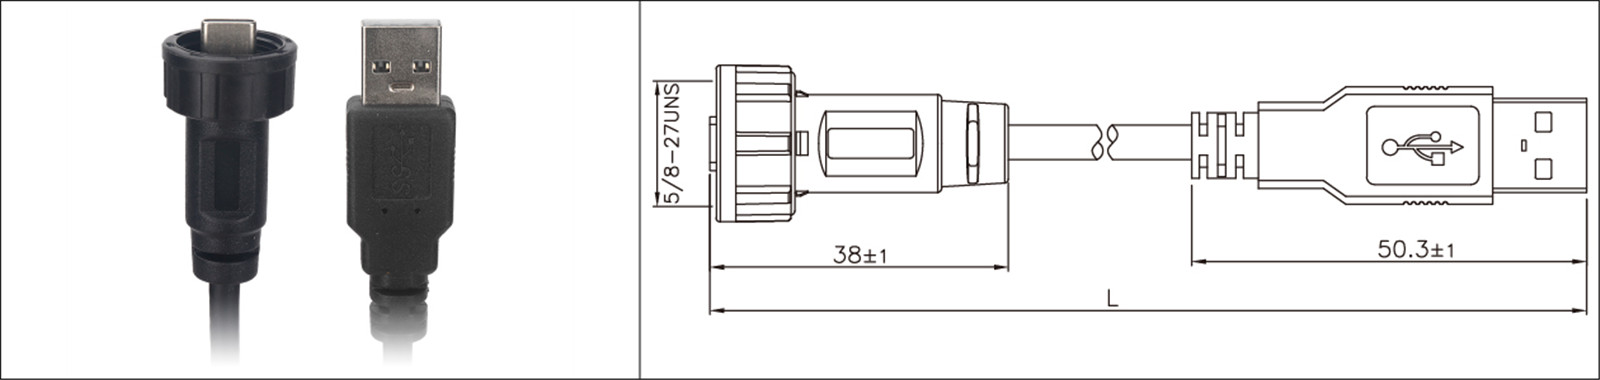 Мацаванне на панэлі Micro USB тыпу 2.0 3.0 жаночы і мужчынскі воданепранікальны IP67 падаўжальны кабель прамысловае злучэнне-02 (8)